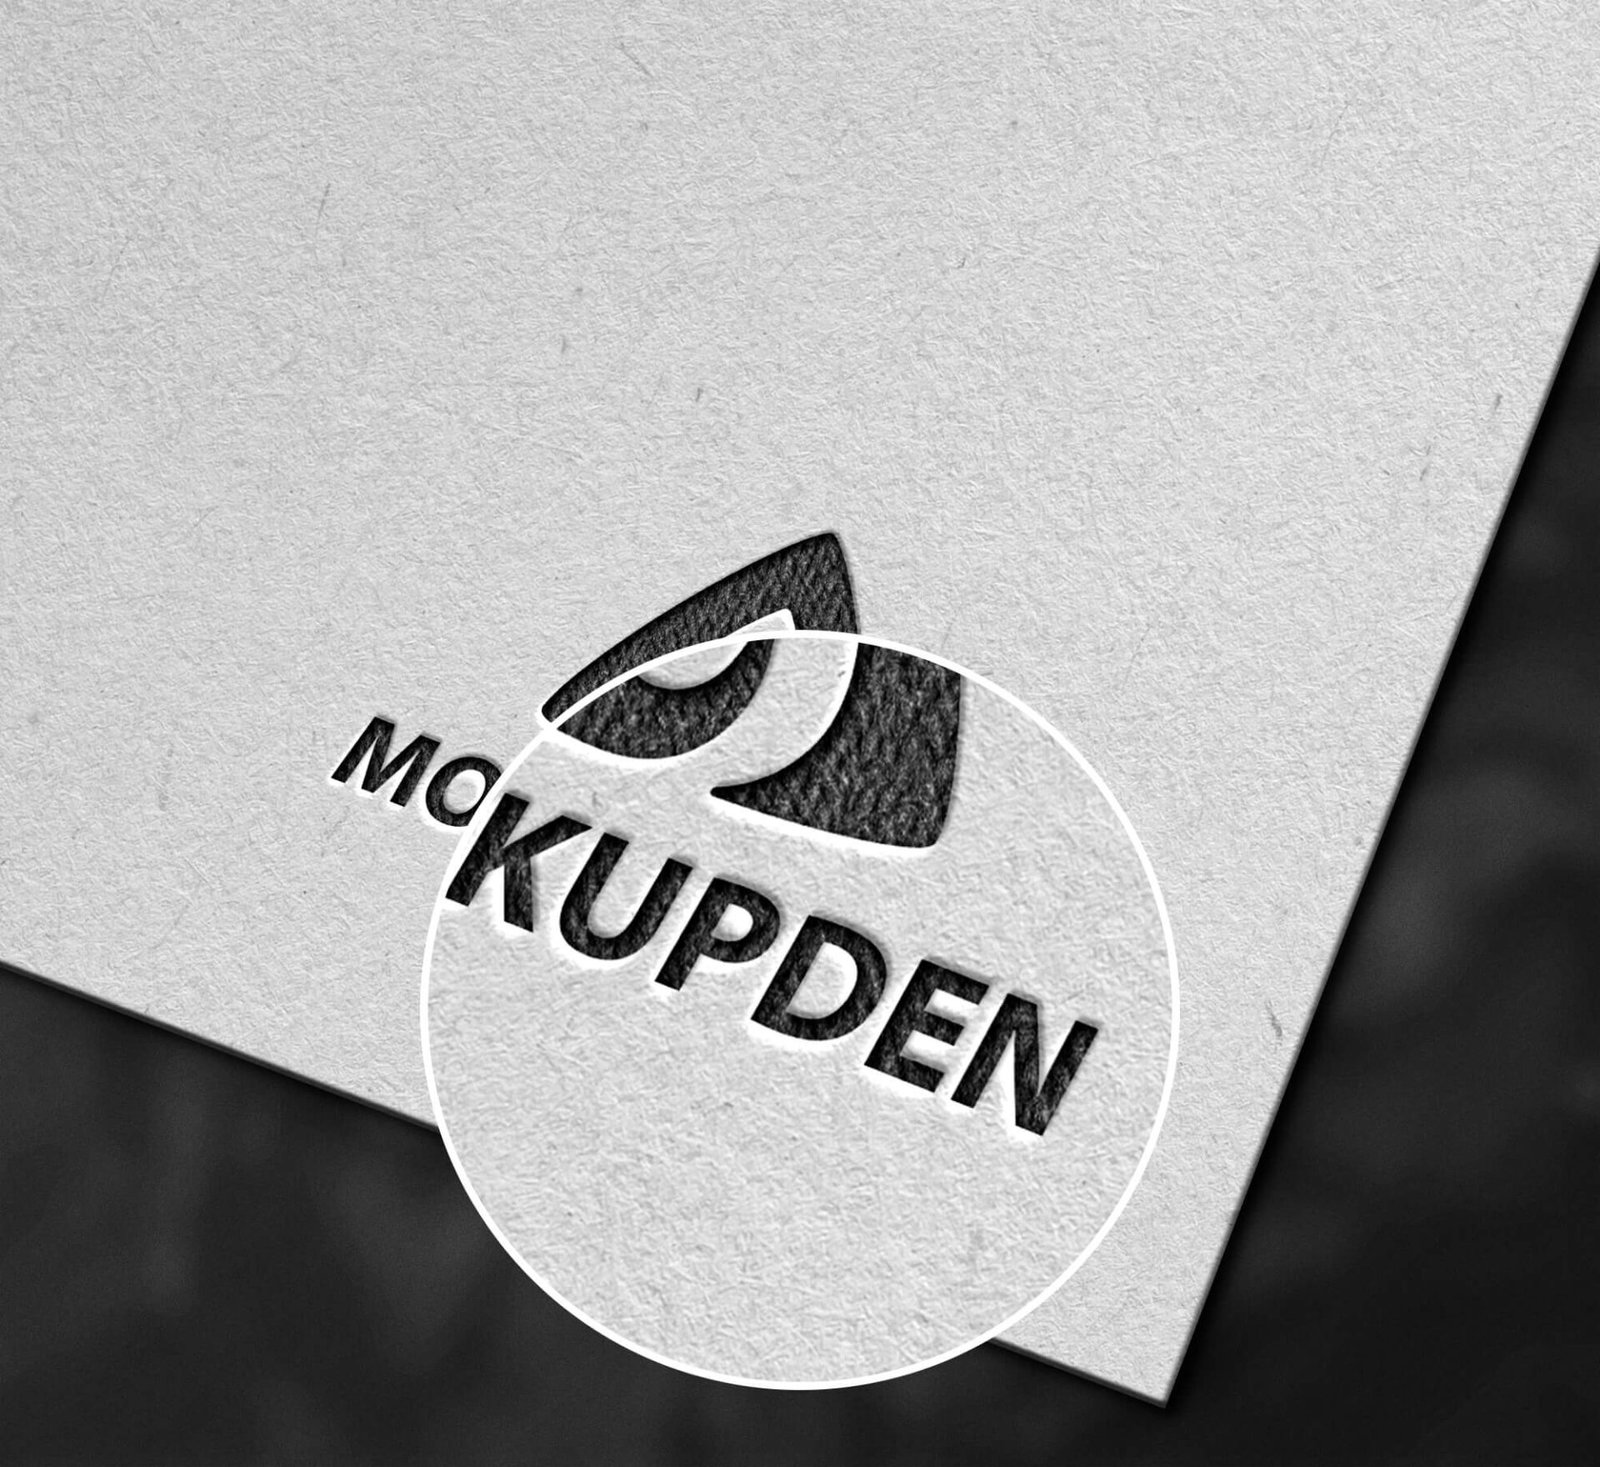 Download Free Sketch Logo Mockup PSD Template - Mockup Den